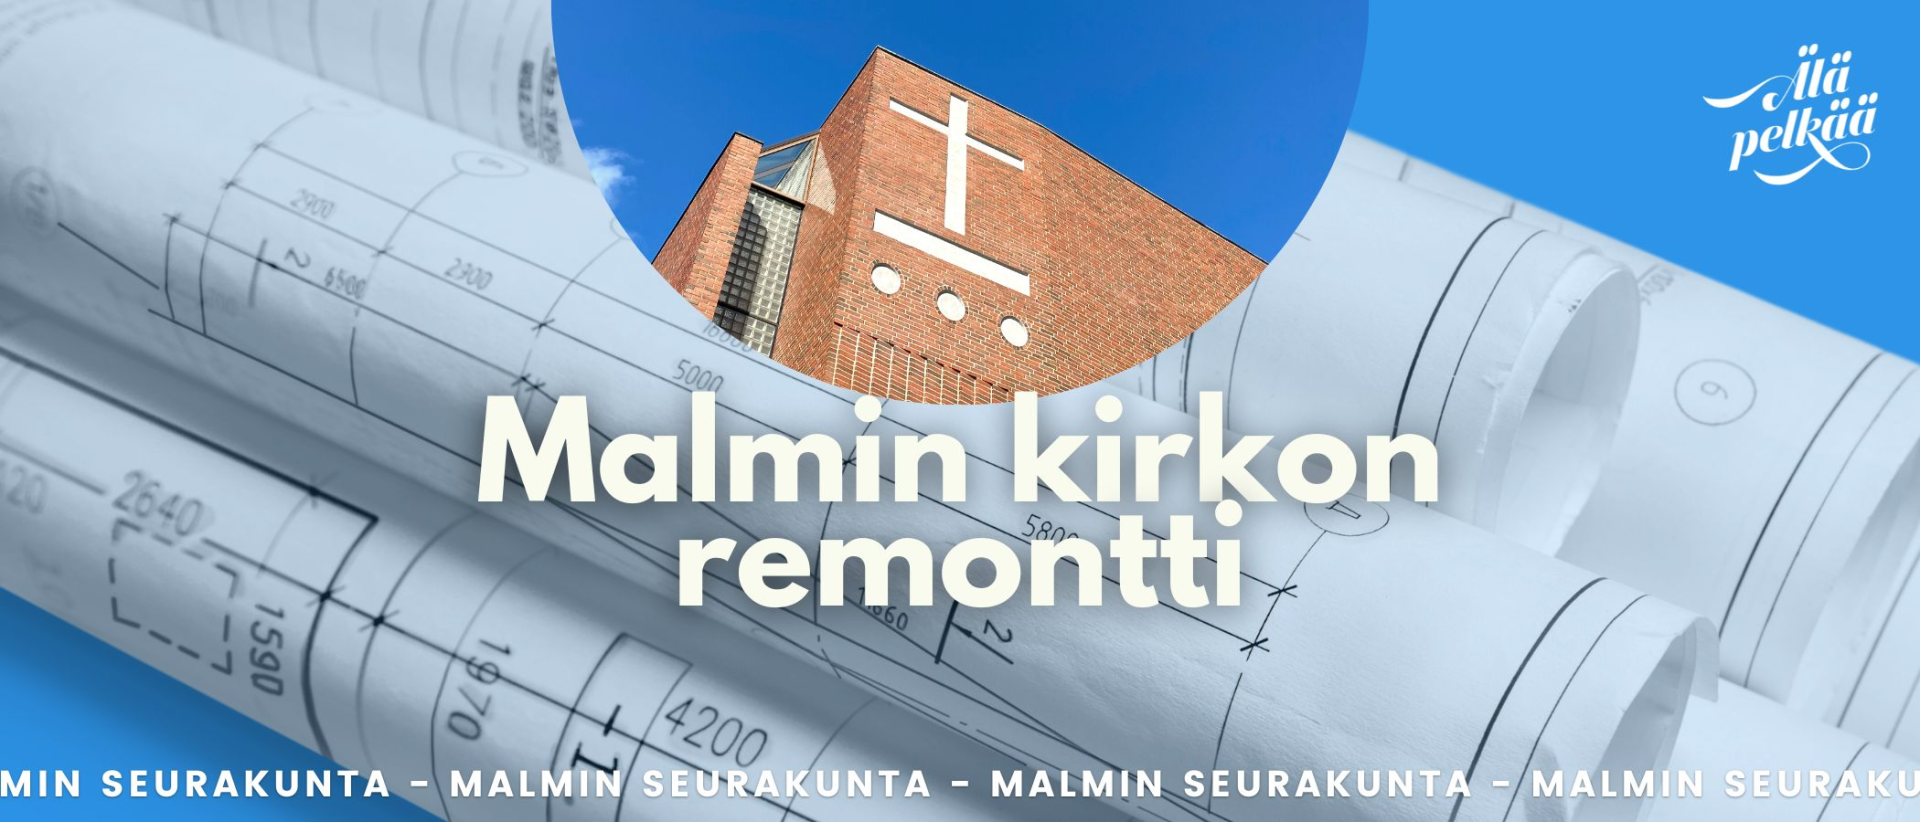 Malmin kirkon remontti-teksti ja kuva Malmin kirkosta